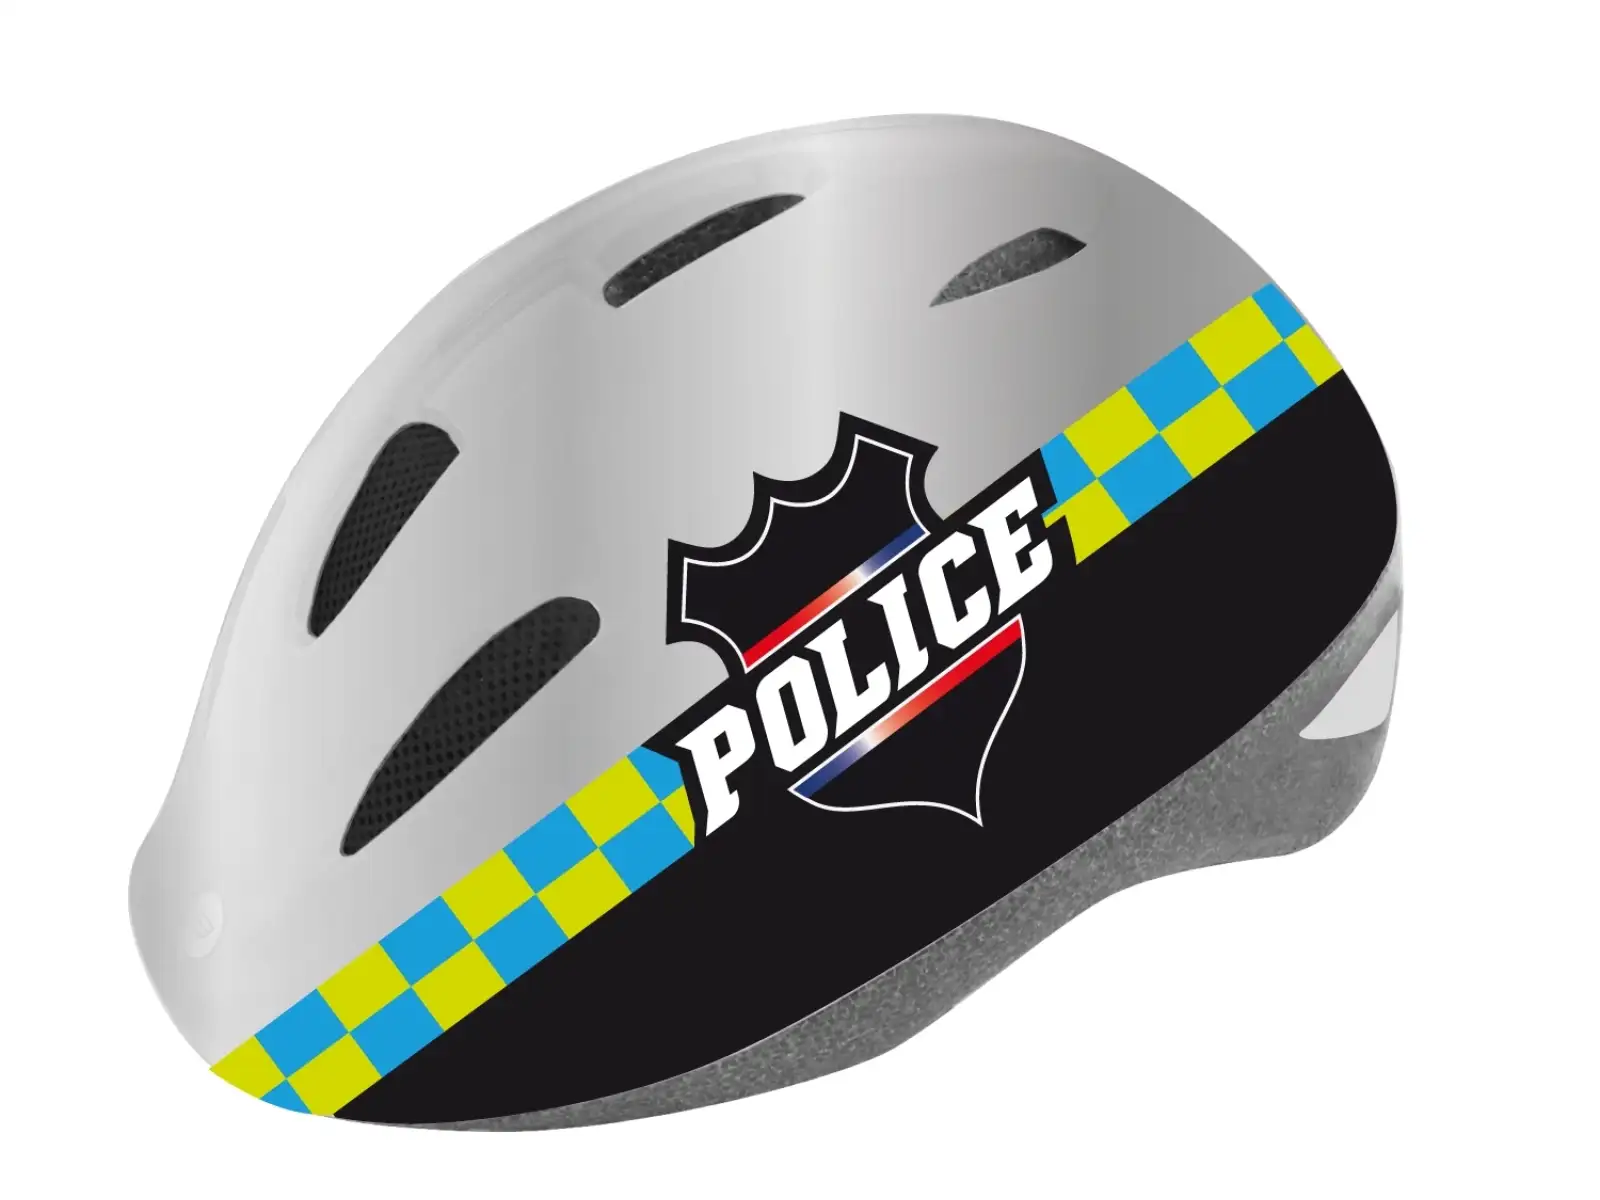 Detská prilba Force Fun Police 2019 čierna/biela